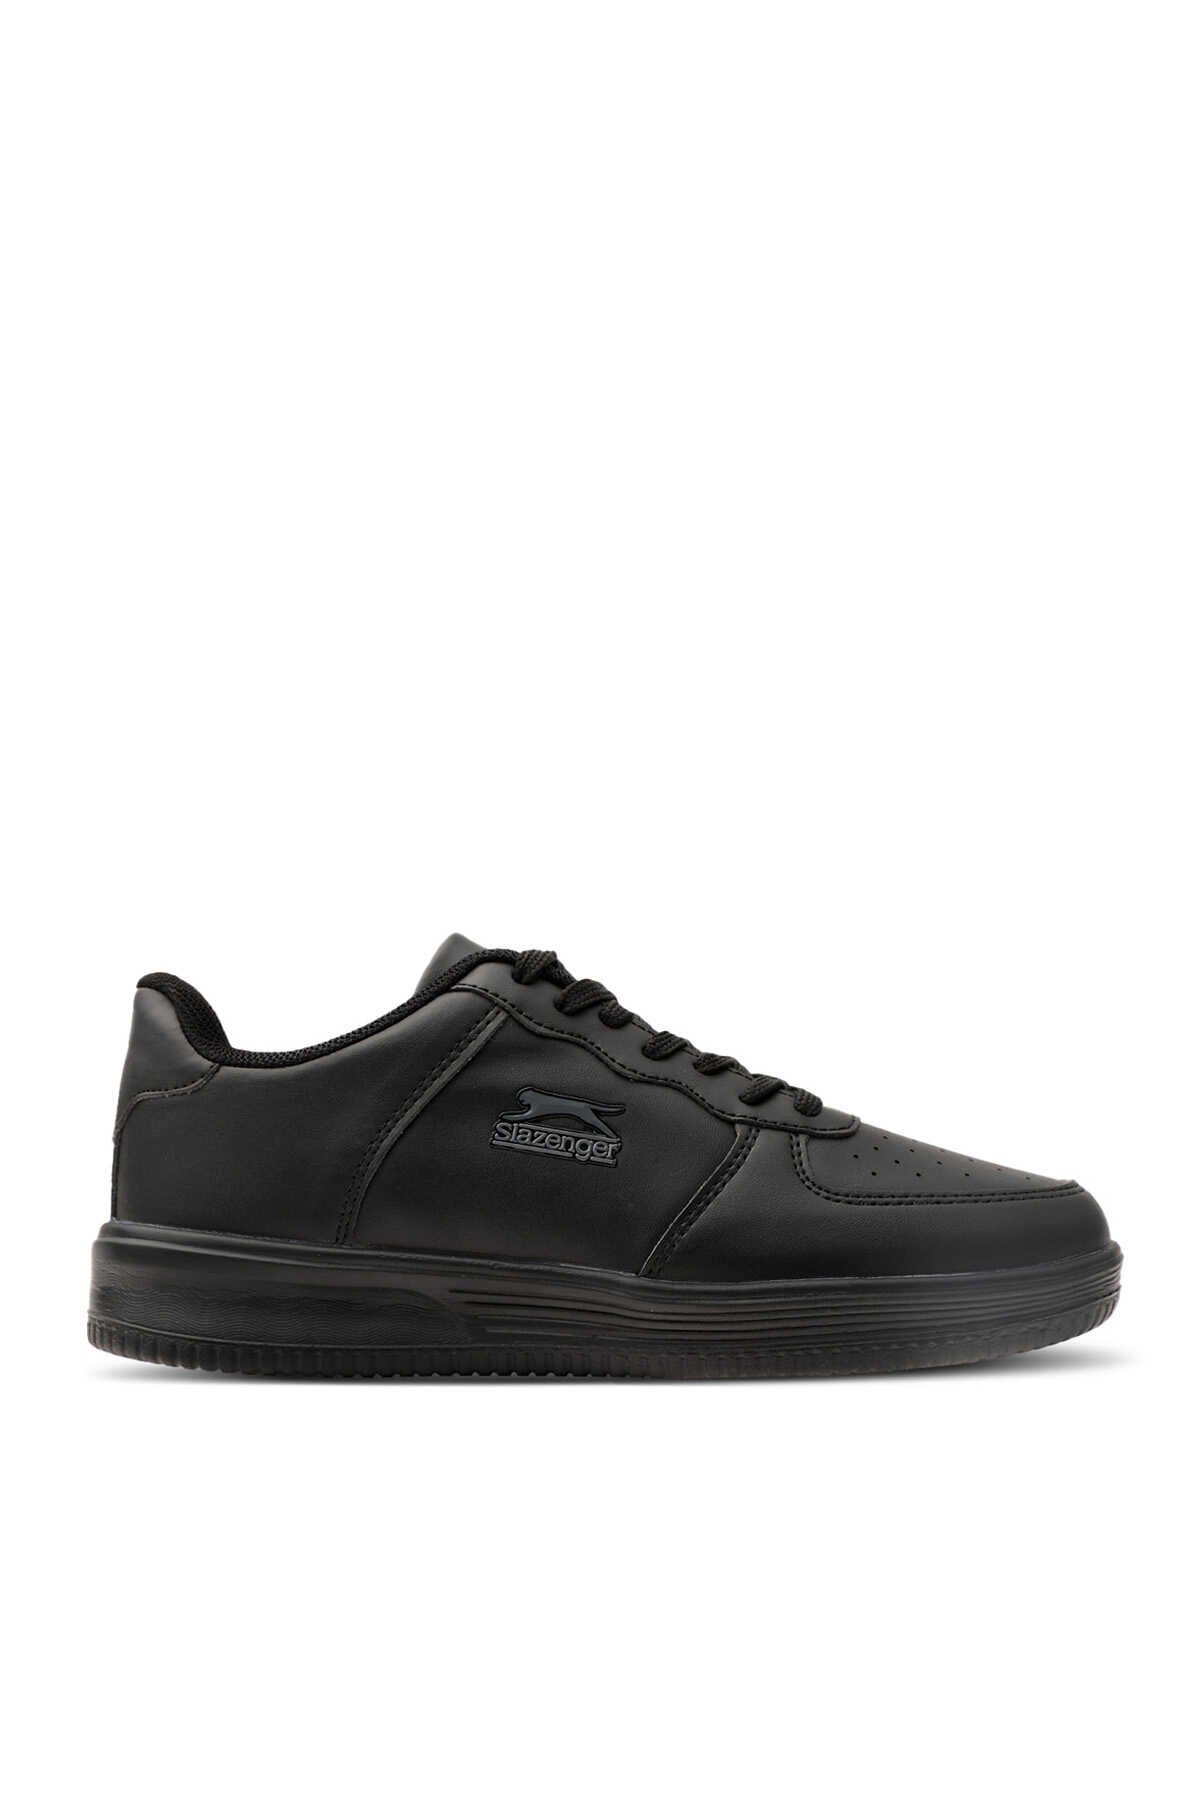 Slazenger - Slazenger CARBON Sneaker Kadın Ayakkabı Siyah / Siyah